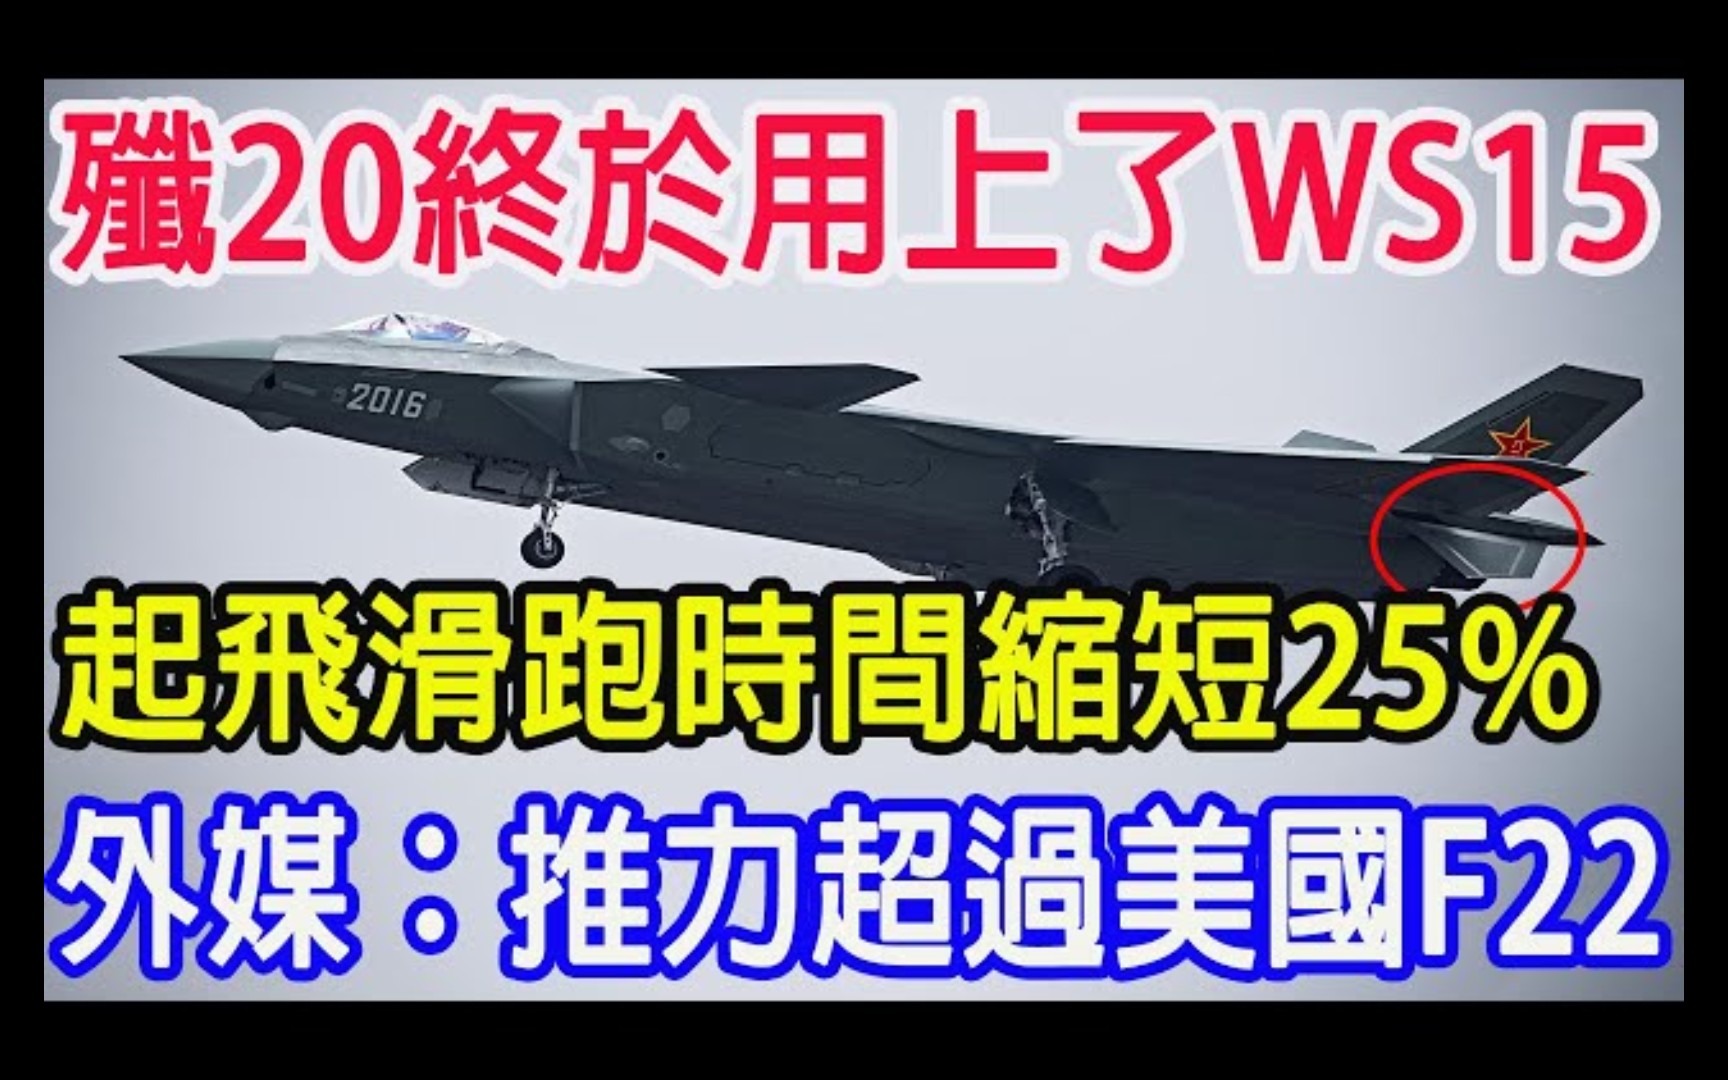 歼20终于用上了WS15，起飞滑跑时间缩短25%，外媒：推力超过美国F22！